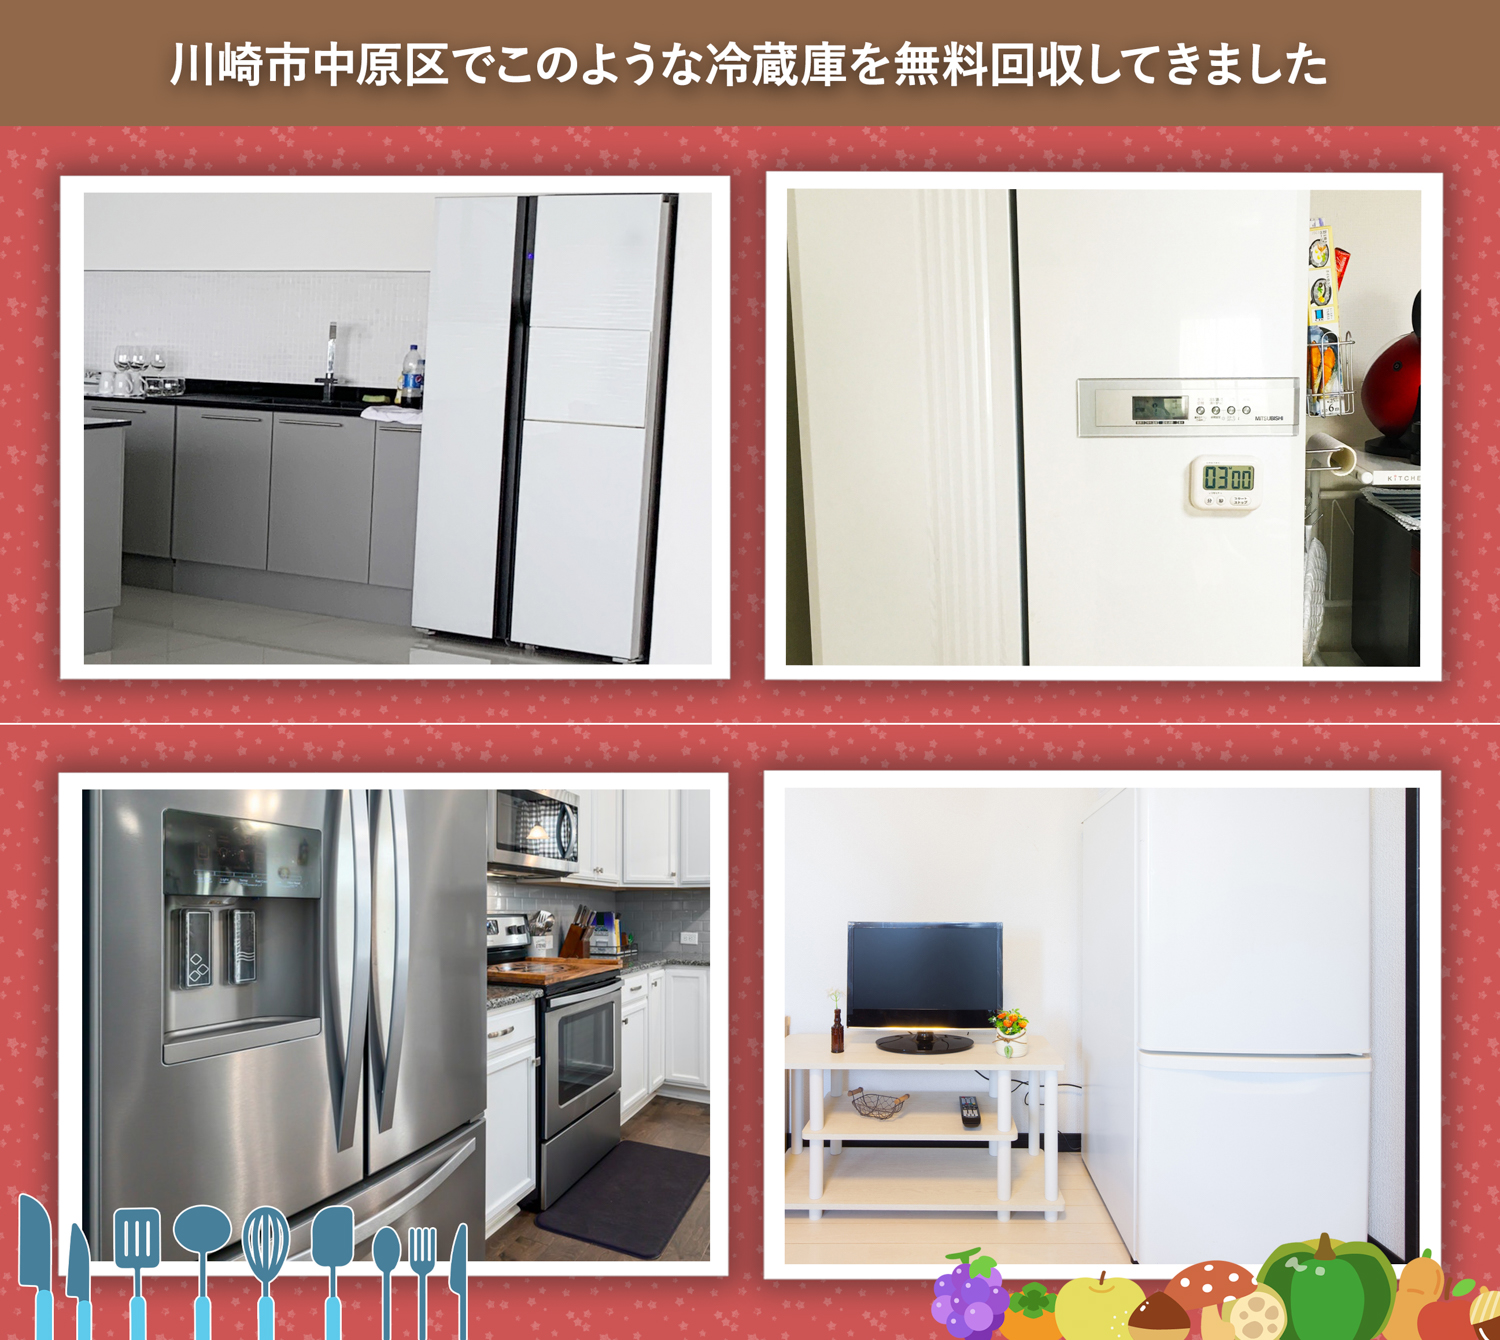 川崎市中原区でこのような冷蔵庫を無料回収してきました。